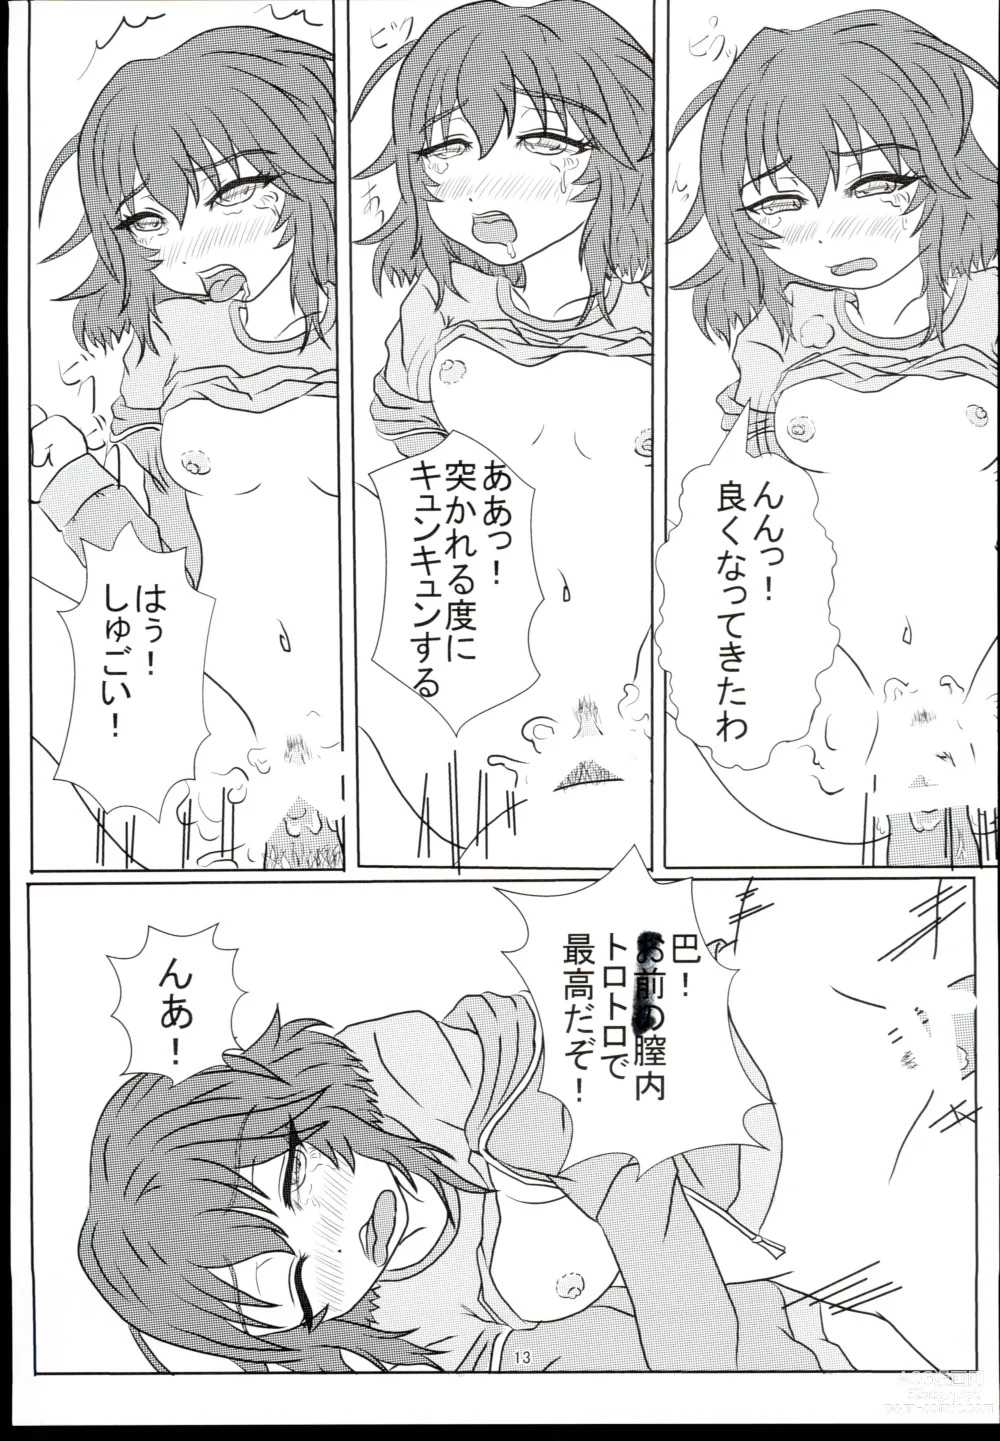 Page 13 of doujinshi Ikkyoku Yubi-an ka?